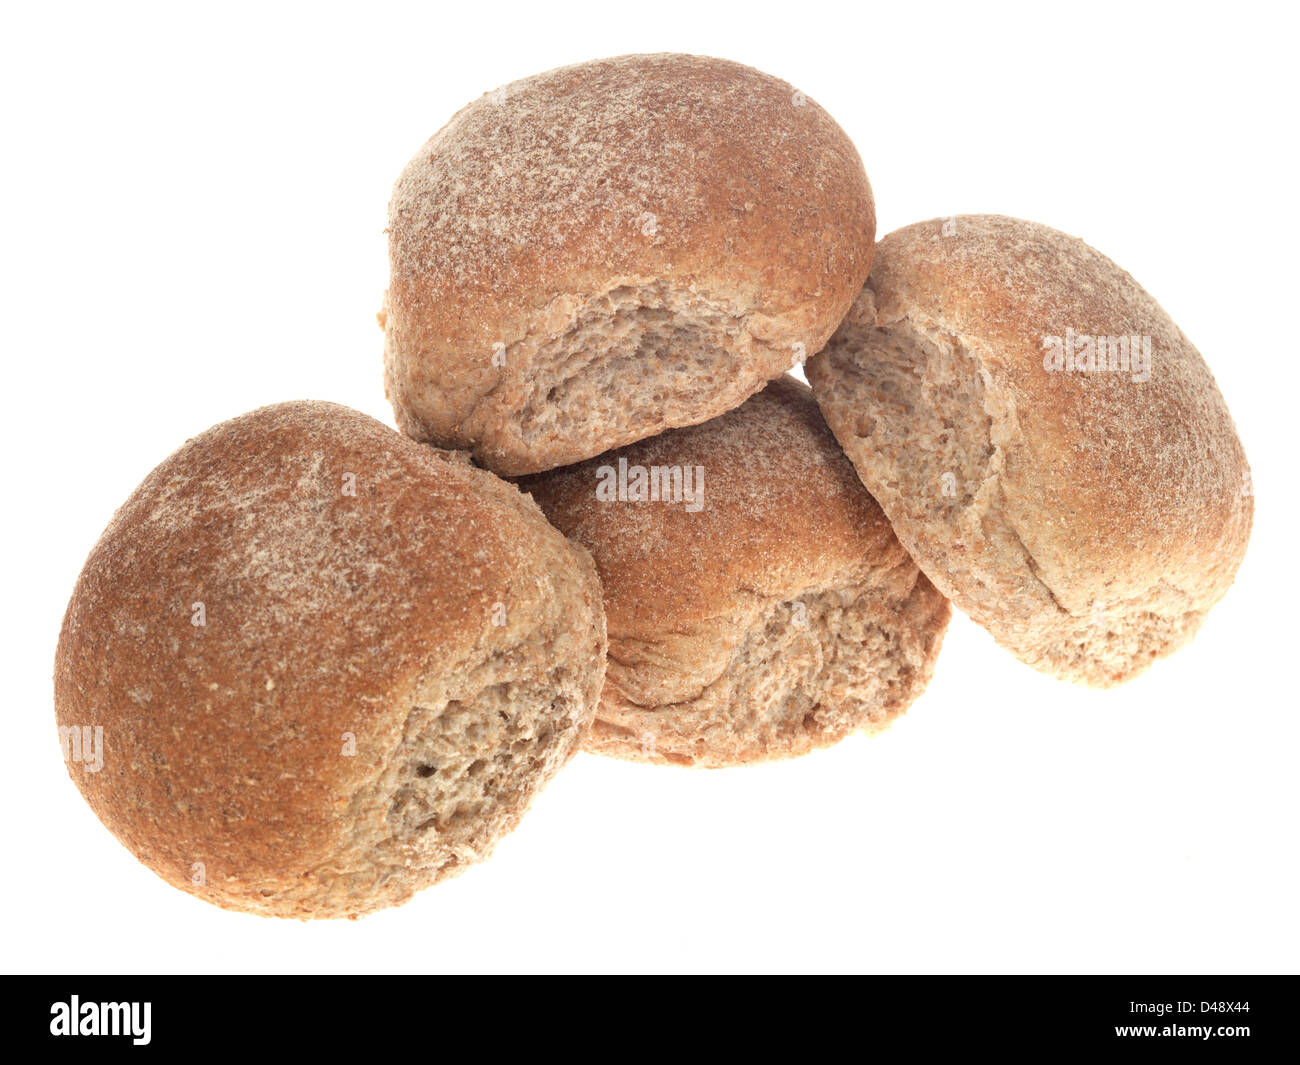 Gruppo di pane appena sfornato Brown Pane integrale panini, isolata contro uno sfondo bianco, con nessun popolo Foto Stock